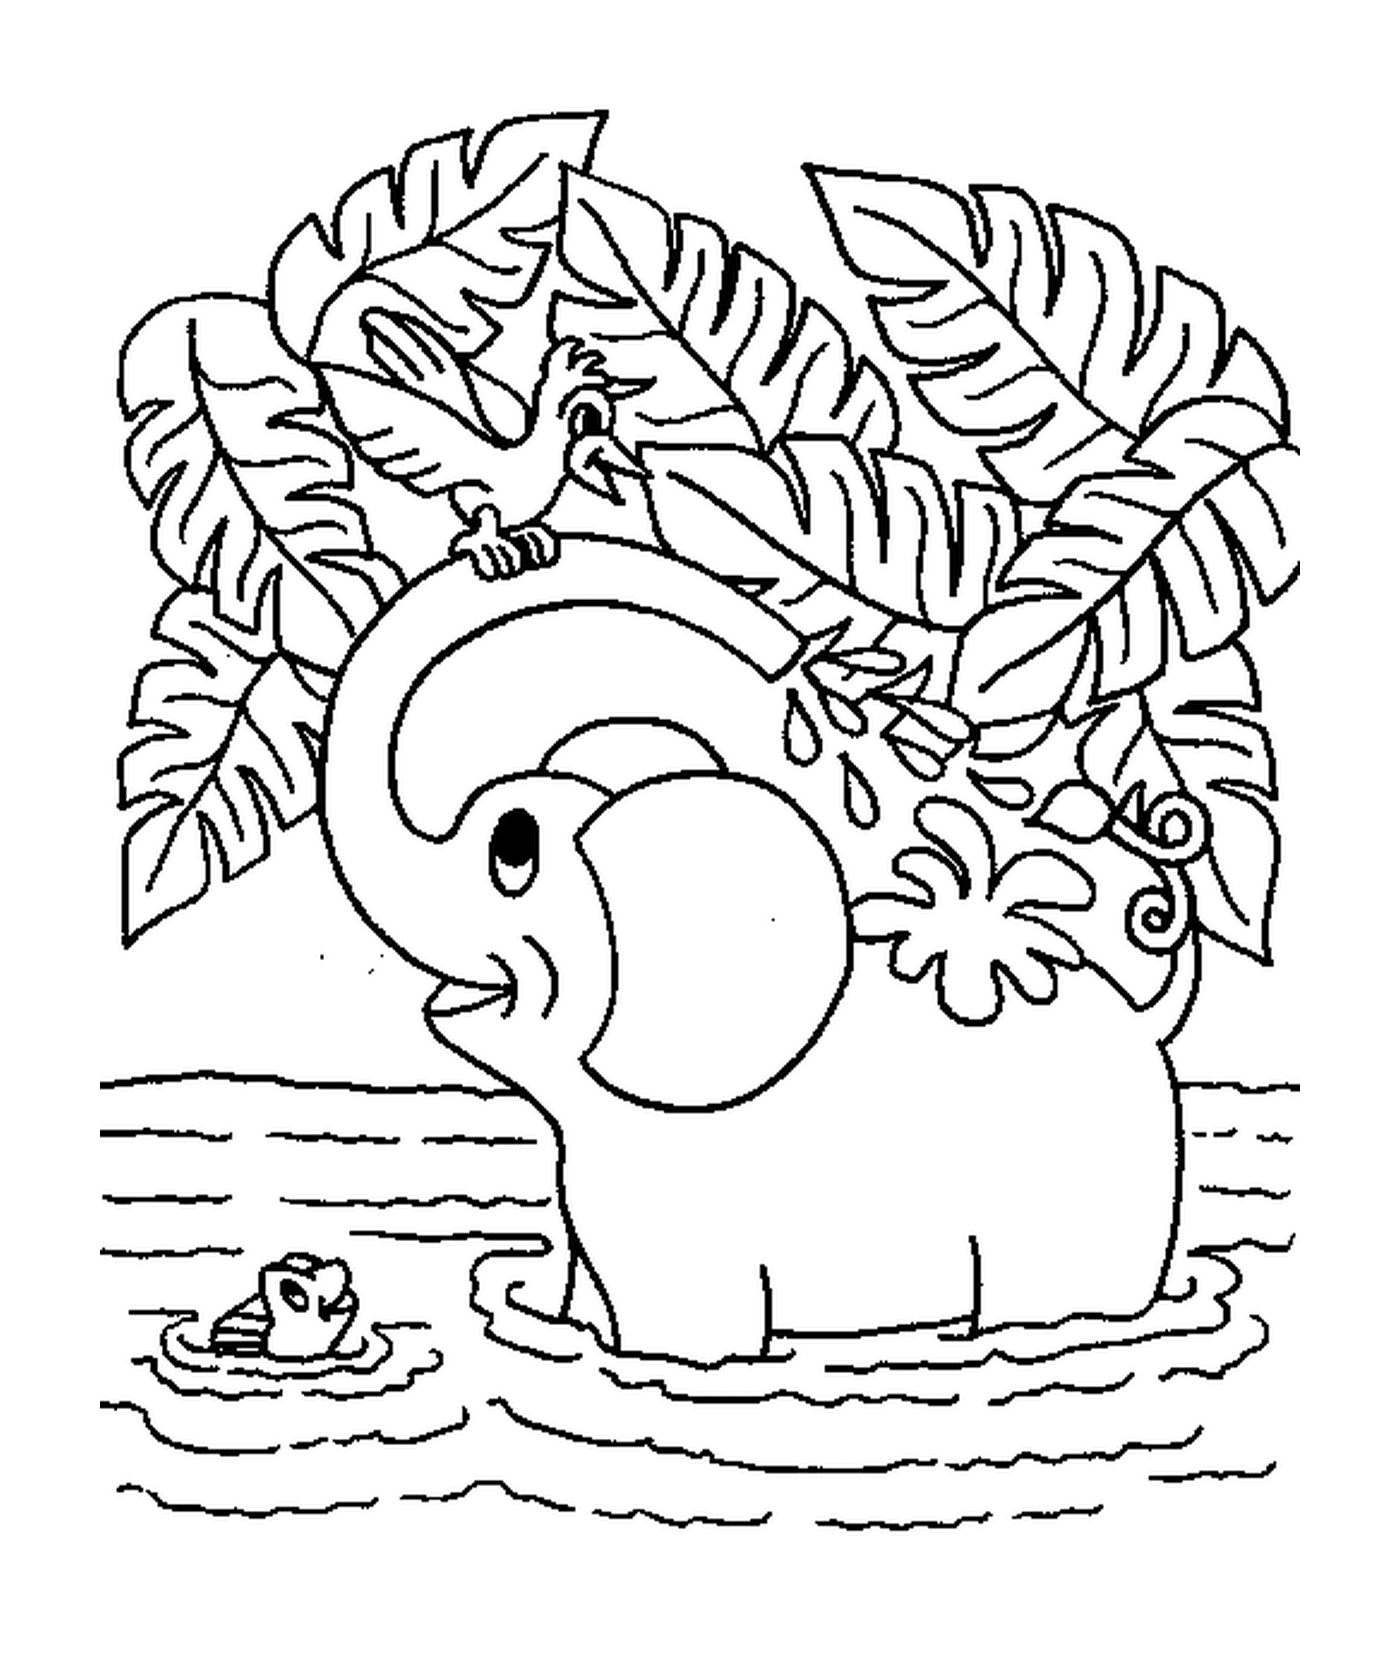  हाथी नदी में नहाता है 